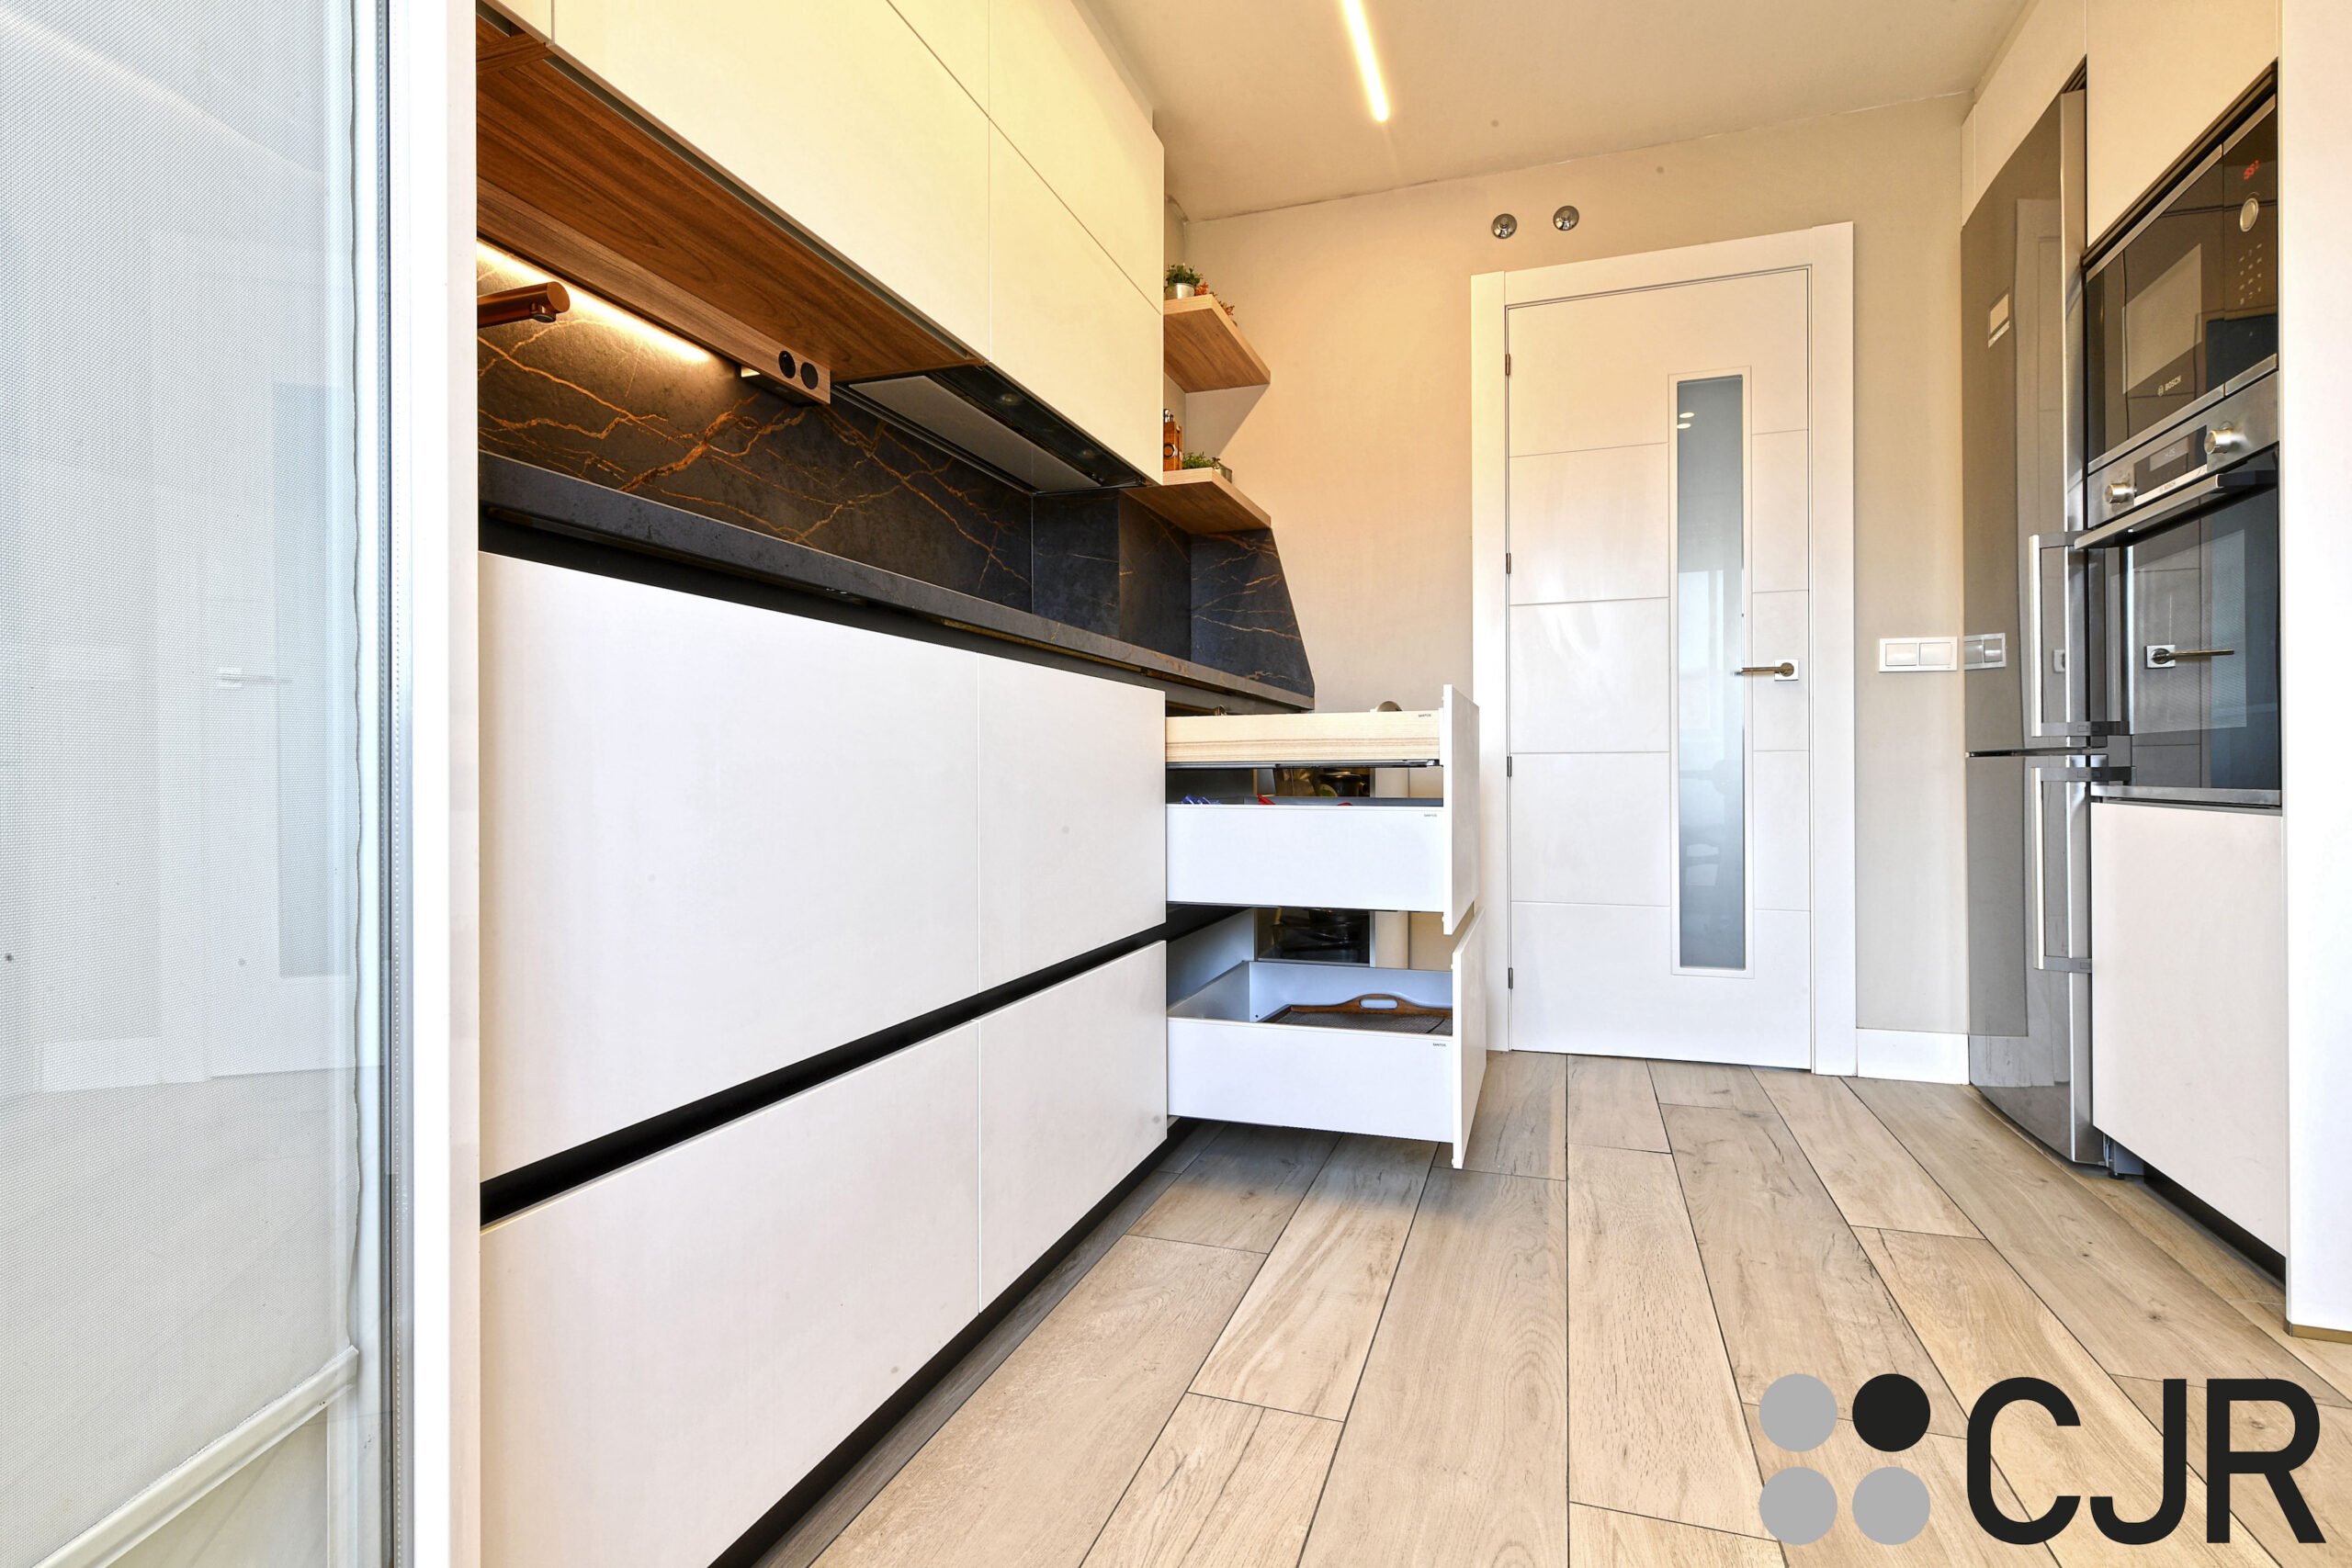 muebles bajos de cocina en blanco y madera cocinas cjr